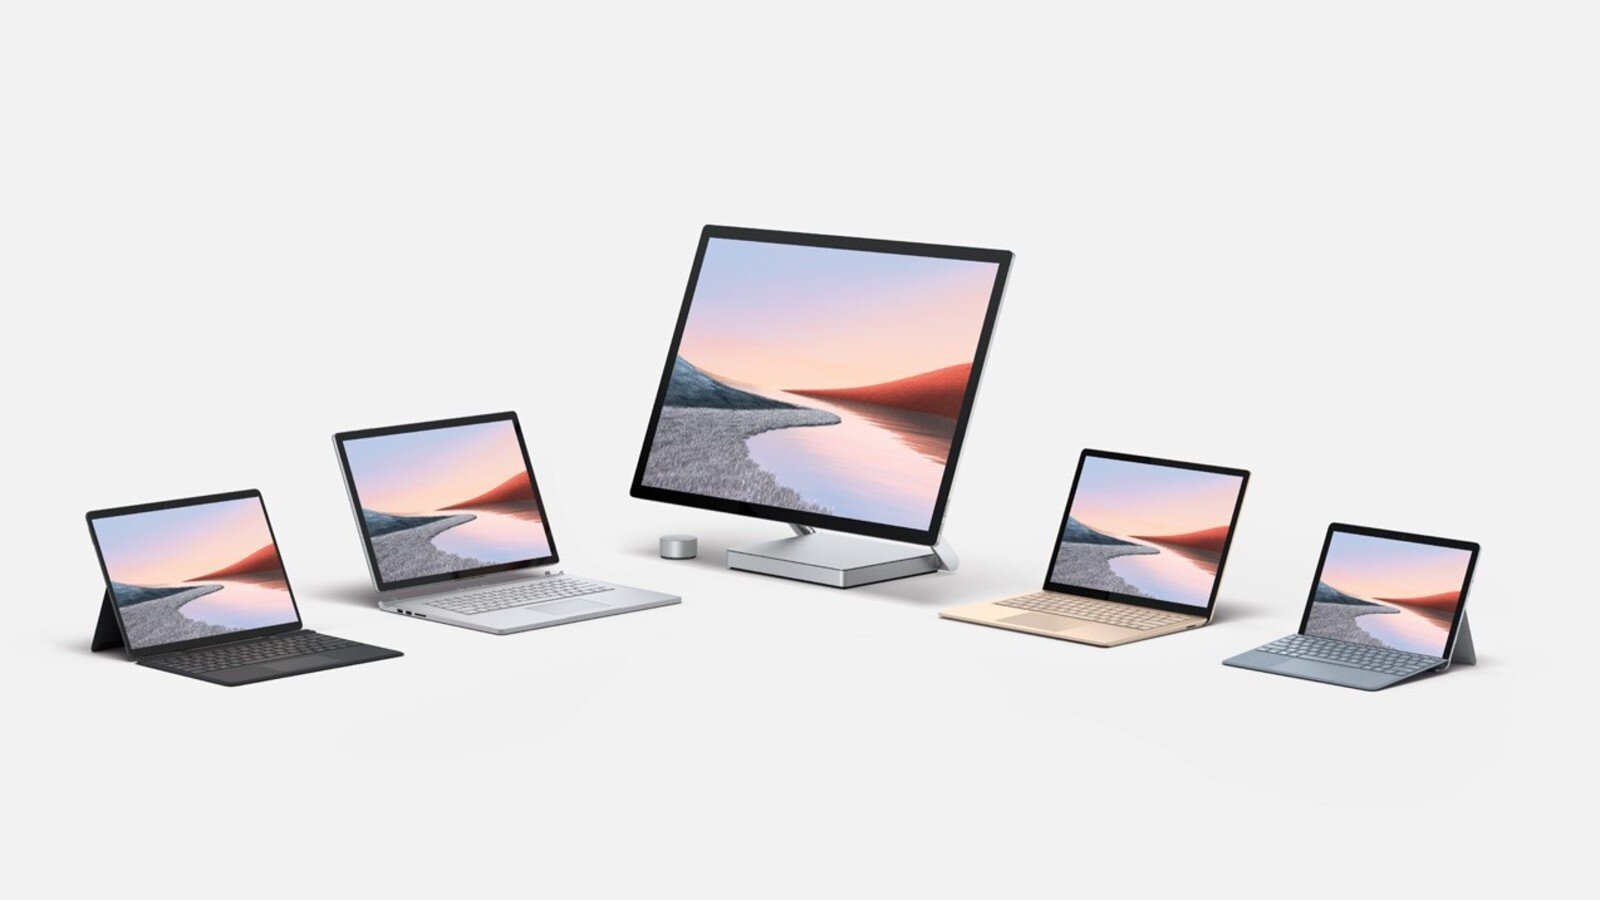 Περισσότερες πληροφορίες για "Surface hardware επίσημα στην Ελλάδα και νέο event στα τέλη του μήνα"